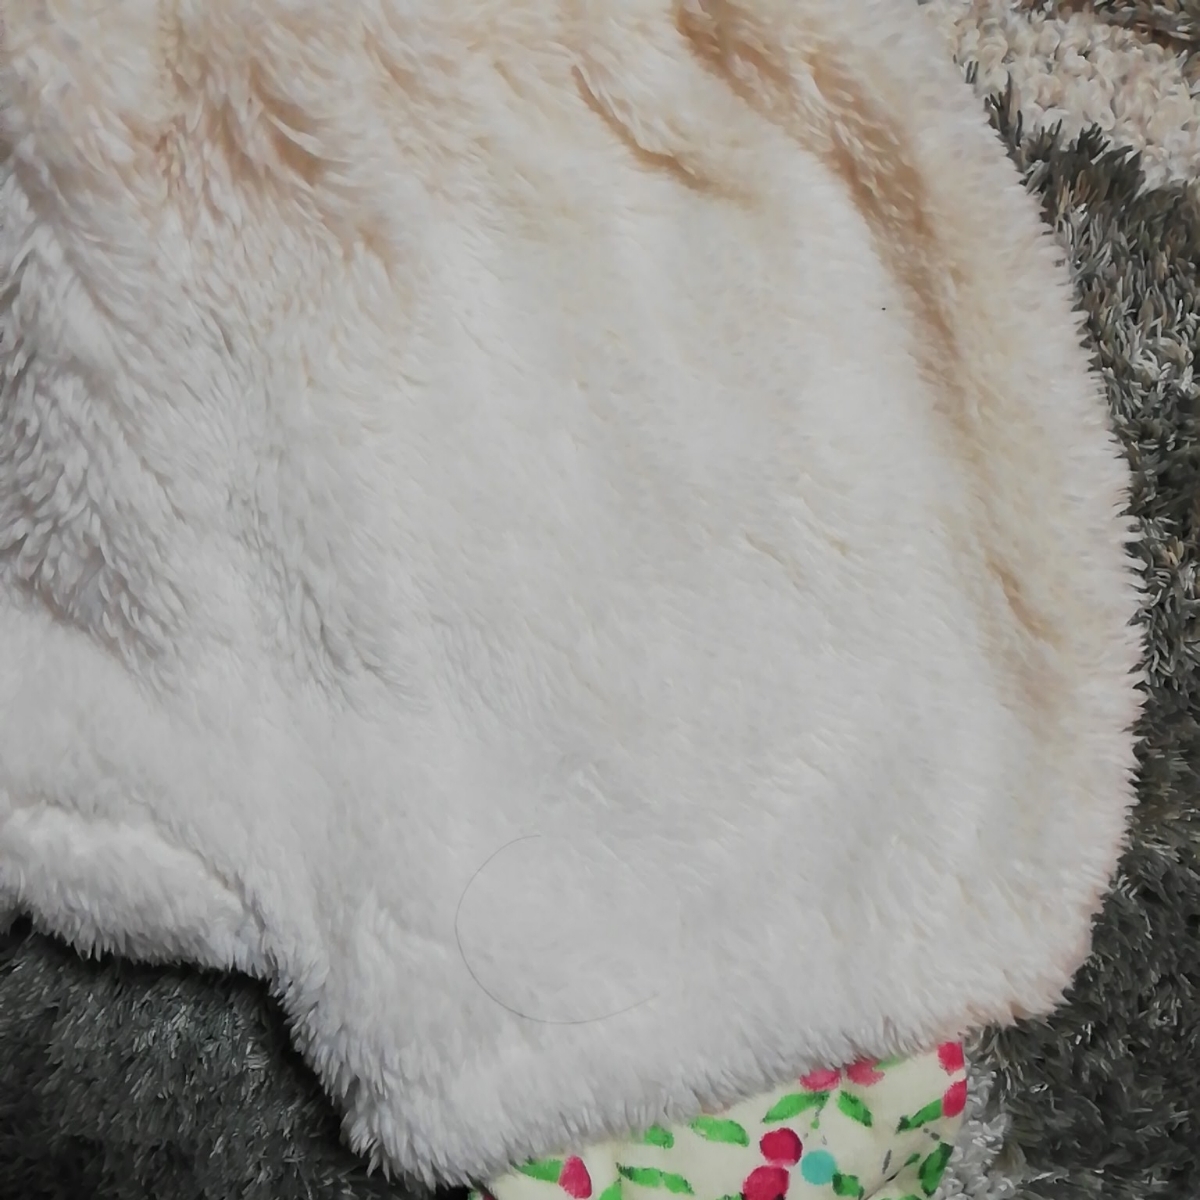  девочка RagPet ковер домашнее животное 90 бирка есть новый товар не использовался вскрыть товар mo Como ko брюки осень-зима защищающий от холода 